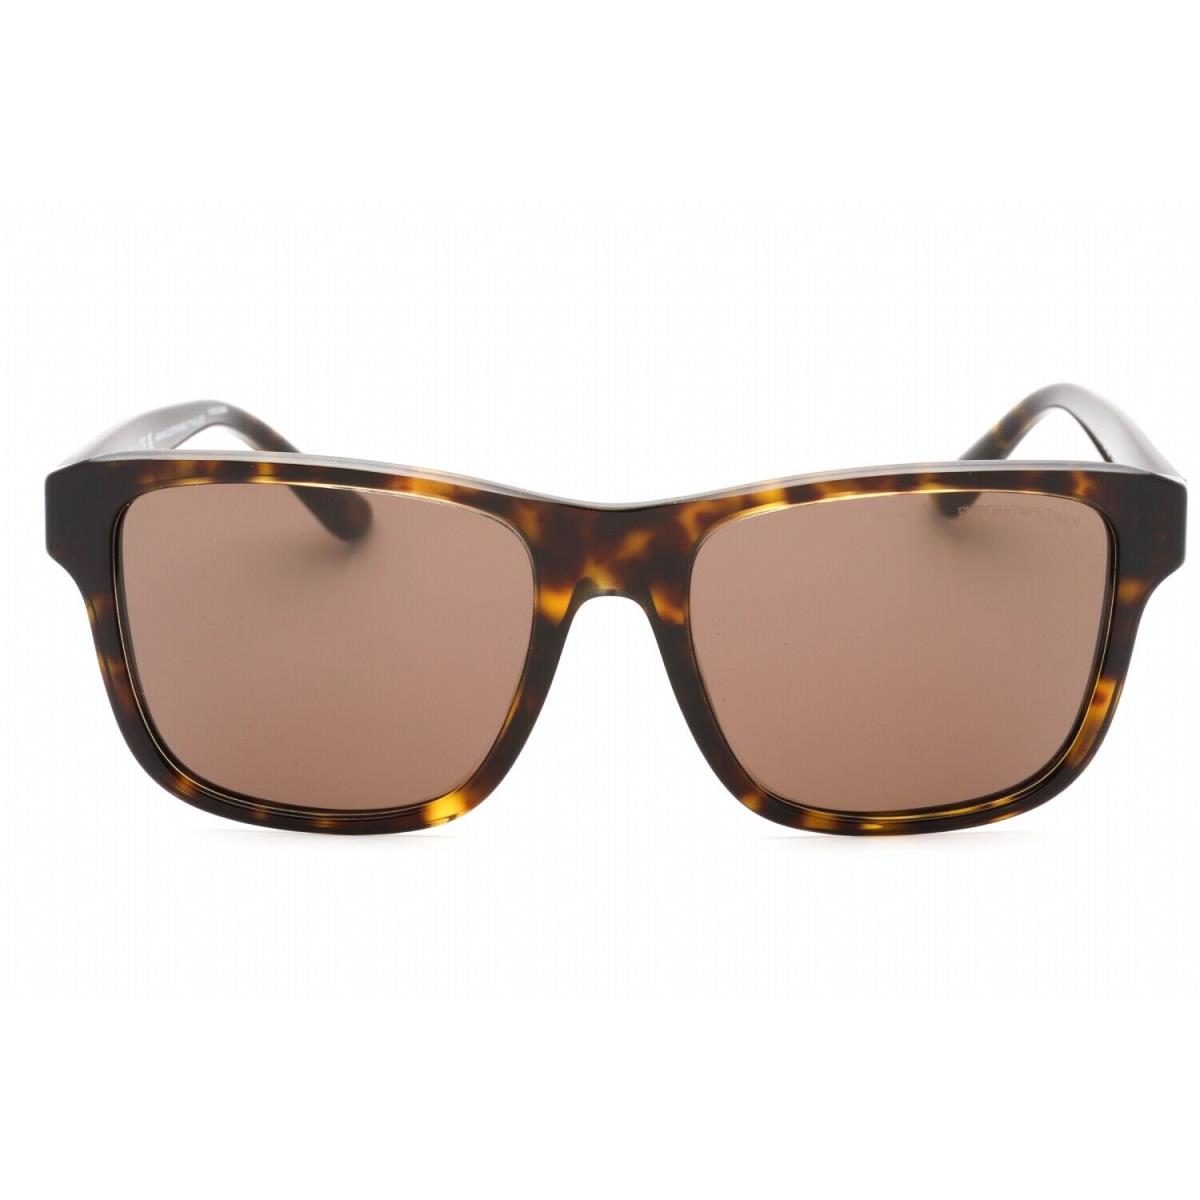 Emporio Armani EA4208-605273-56 Sunglasses Size 56mm 145mm 18mm Brown Men